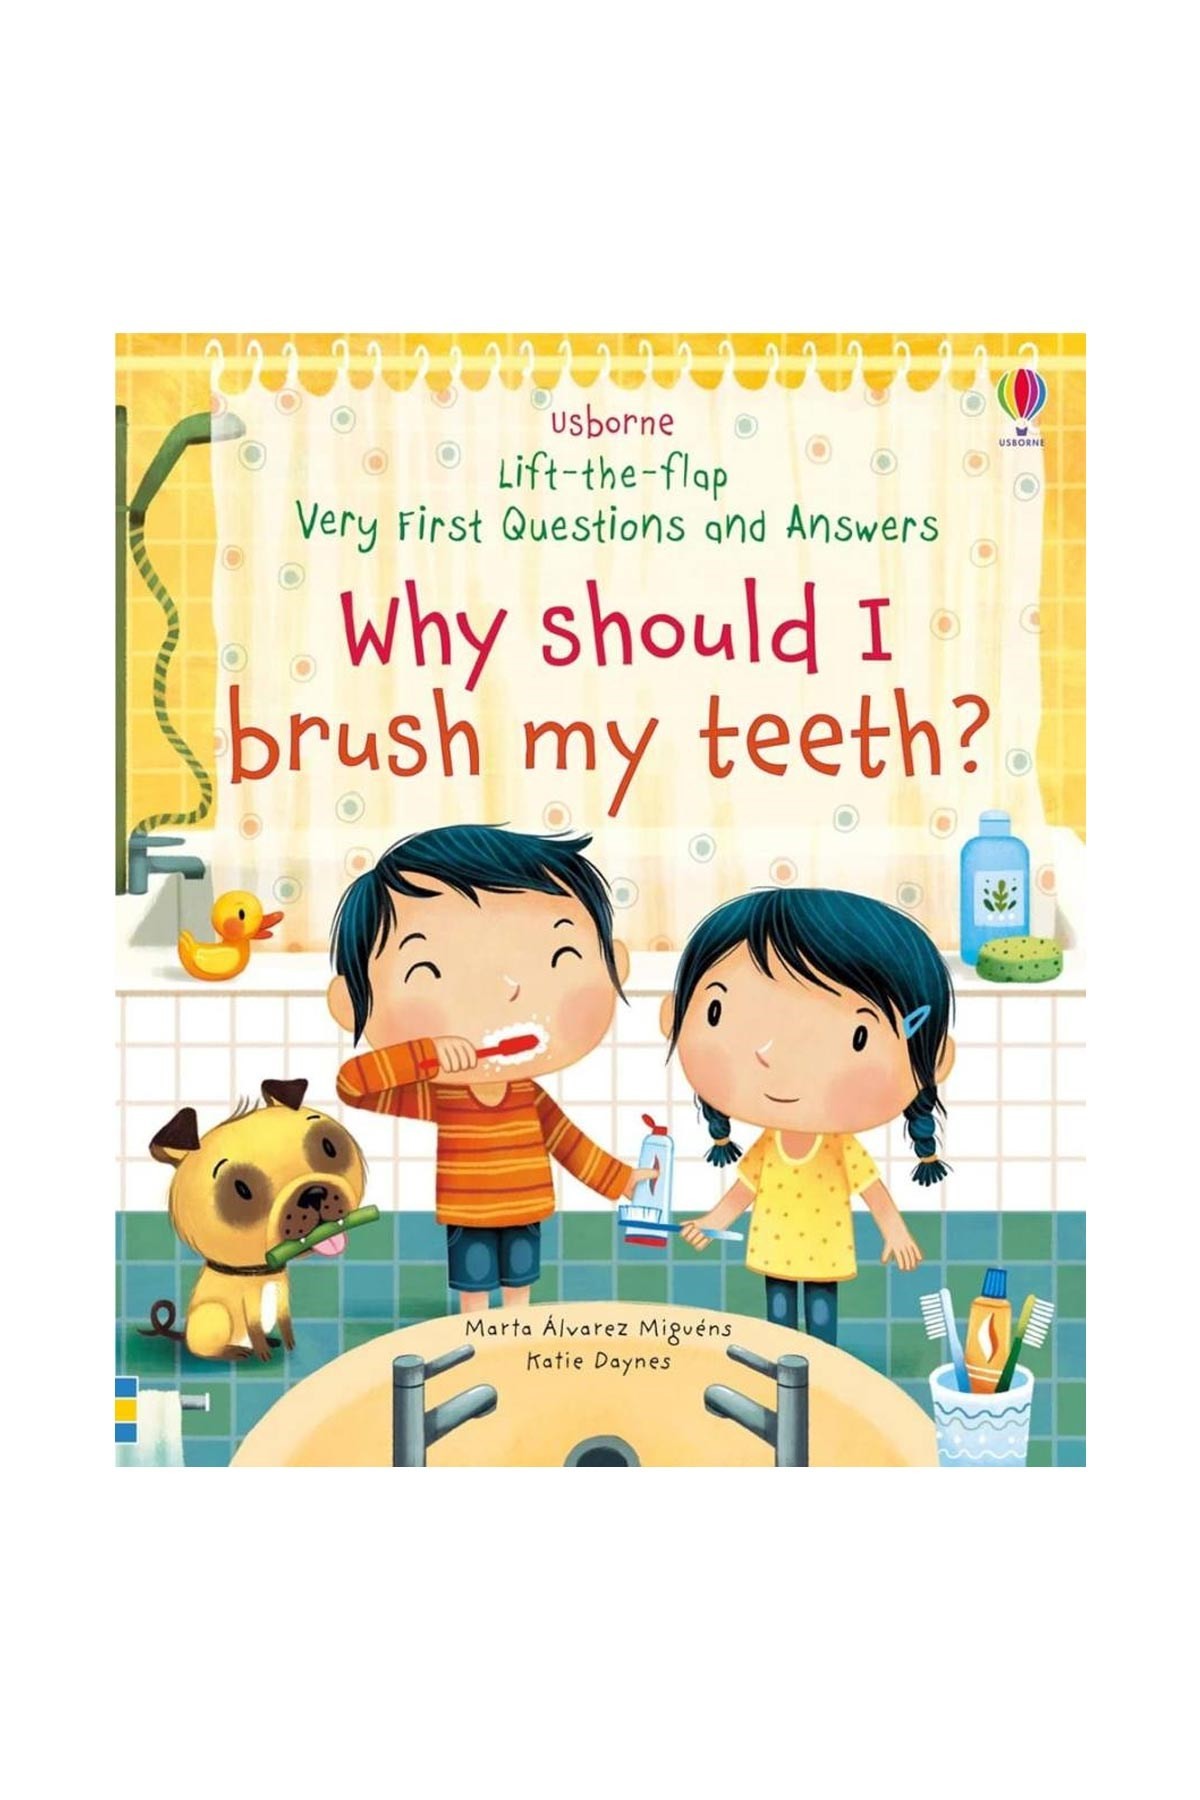 The Usborne Ltf Vf Q&A Why Should I Brush My Teeth?